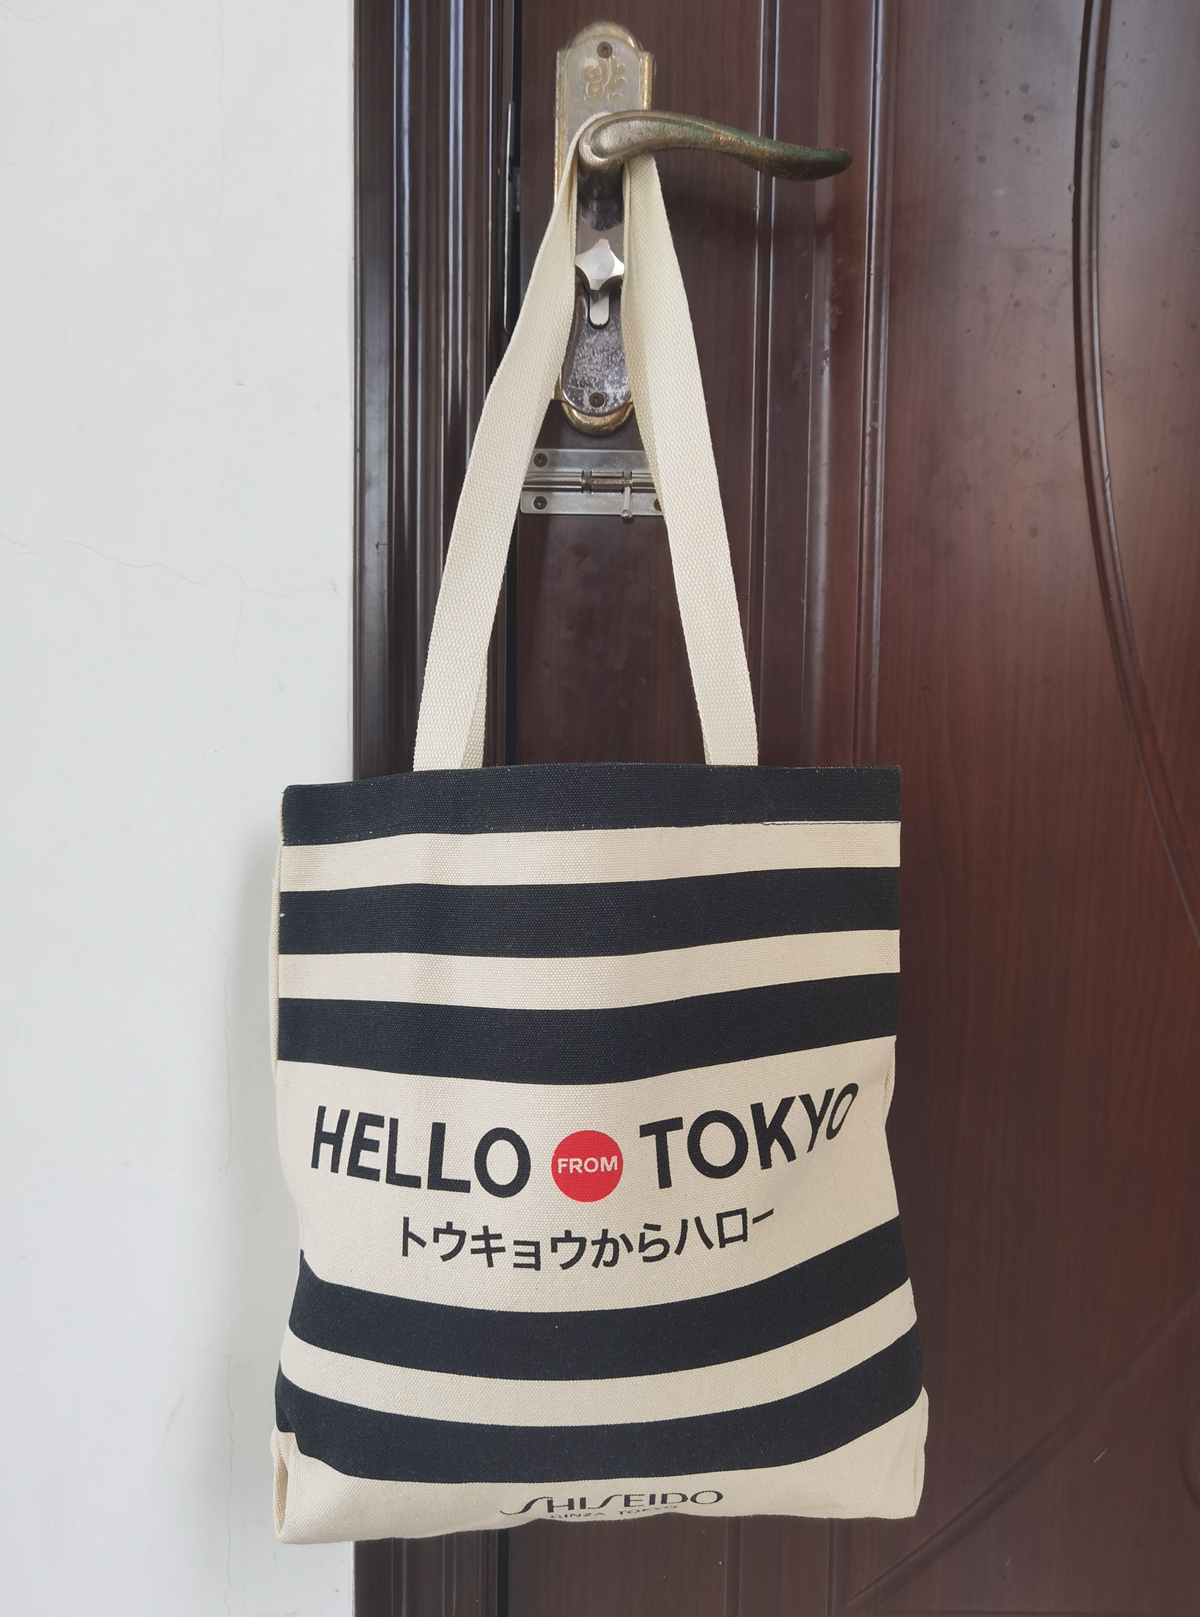 HELLO TOKYO 你好东京 SHISEIDO GINZA TOKYO 御银座帆布包手提包